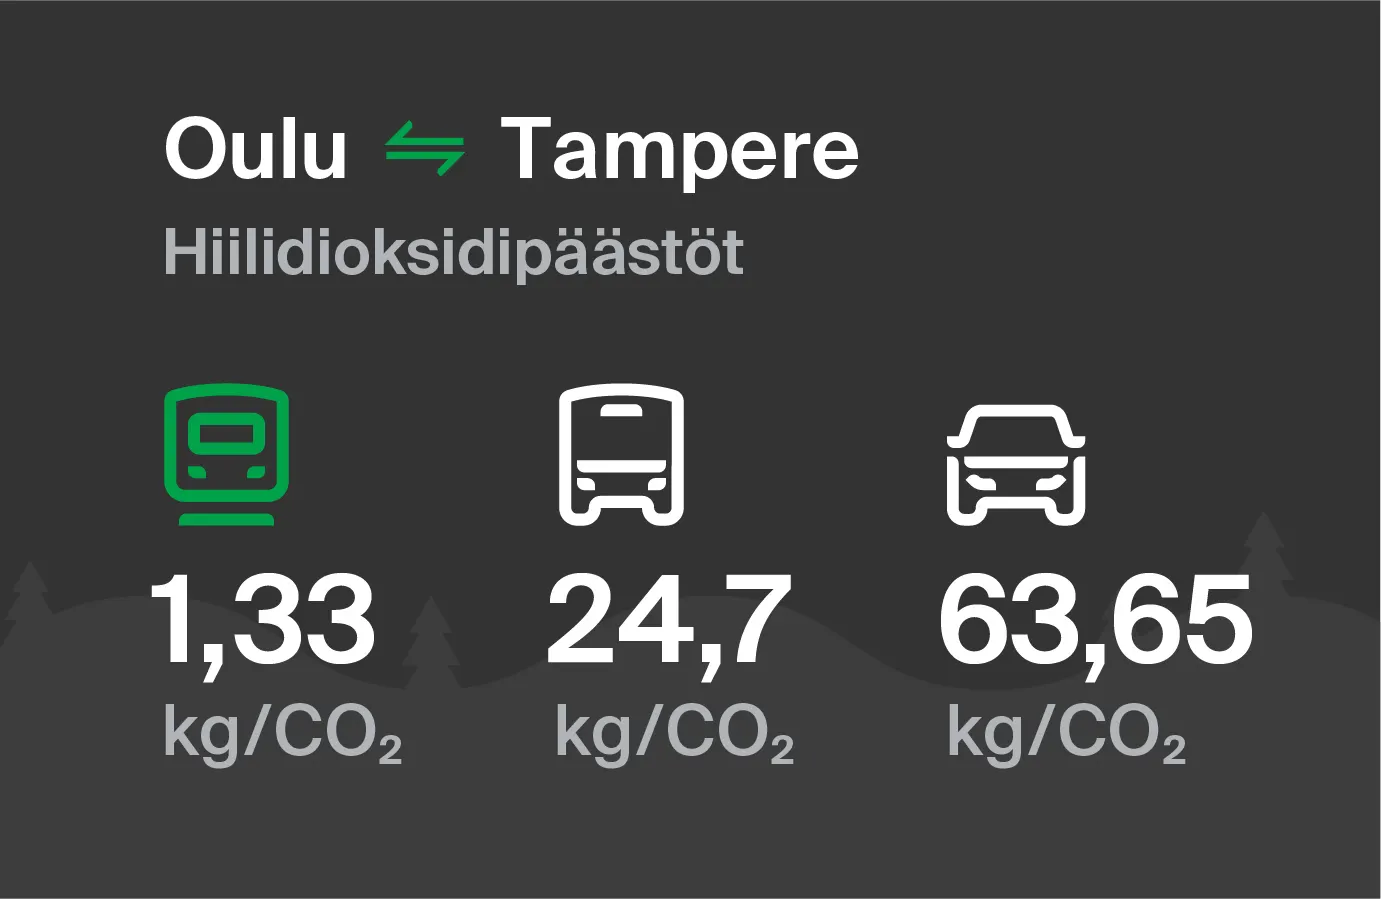 Koldioxidutsläpp från Uleåborg till Tammerfors genom olika transportsätt: med tåg 1,33 kg/CO2, med buss 24,7 kg/CO2 och med bil 63,65 kg/CO2.